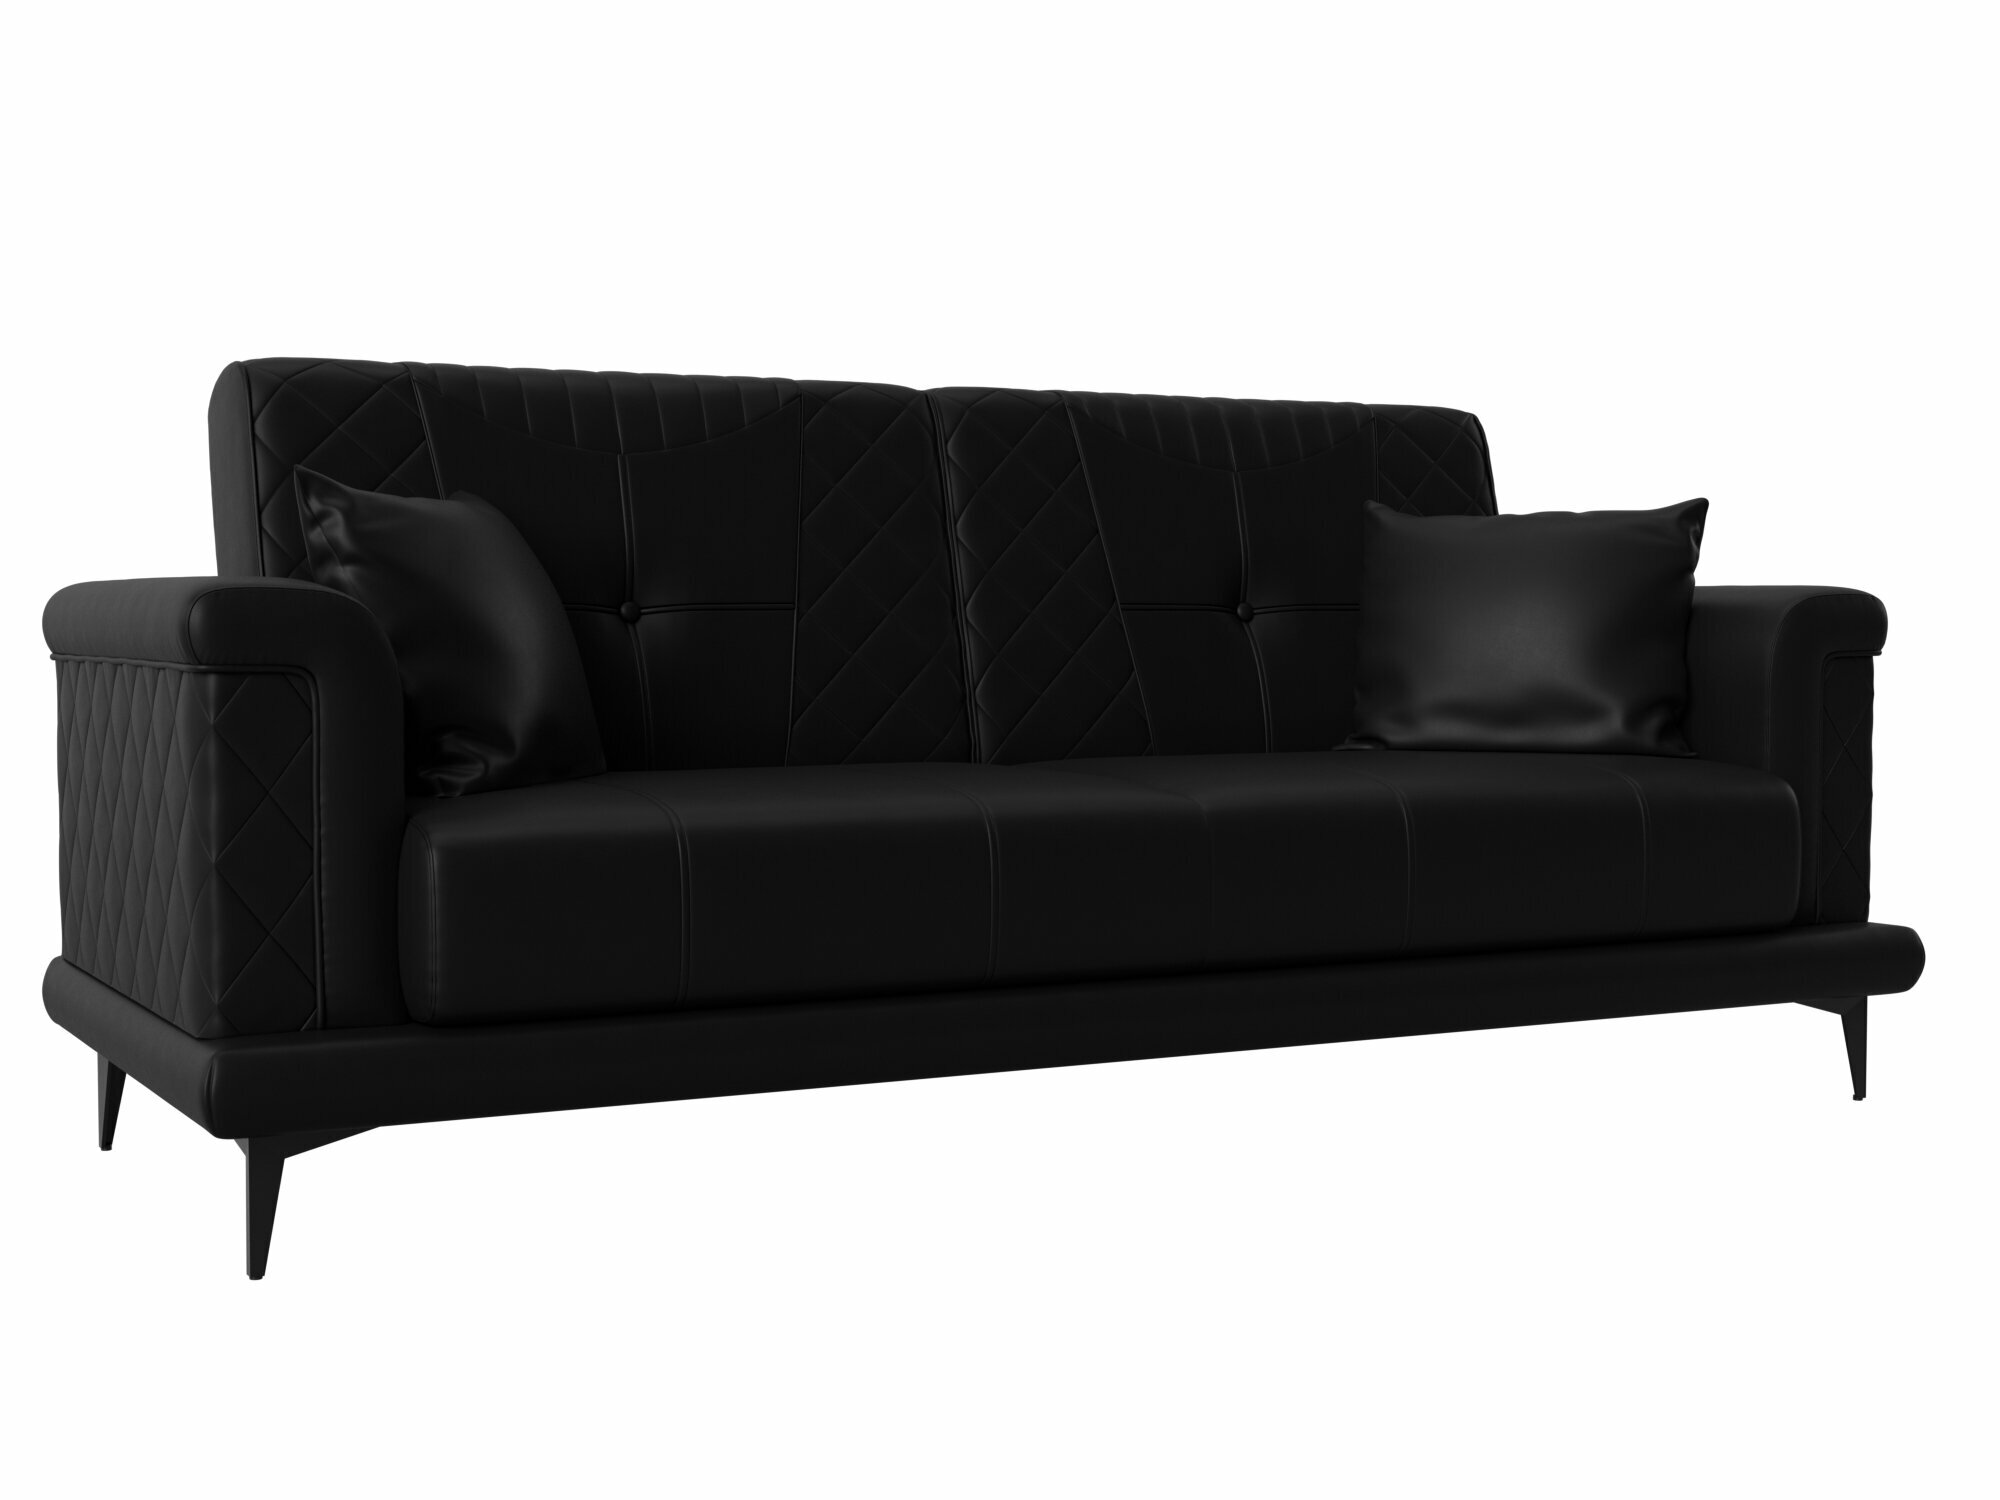 Прямой диван Неаполь, Экокожа, Модель 111949